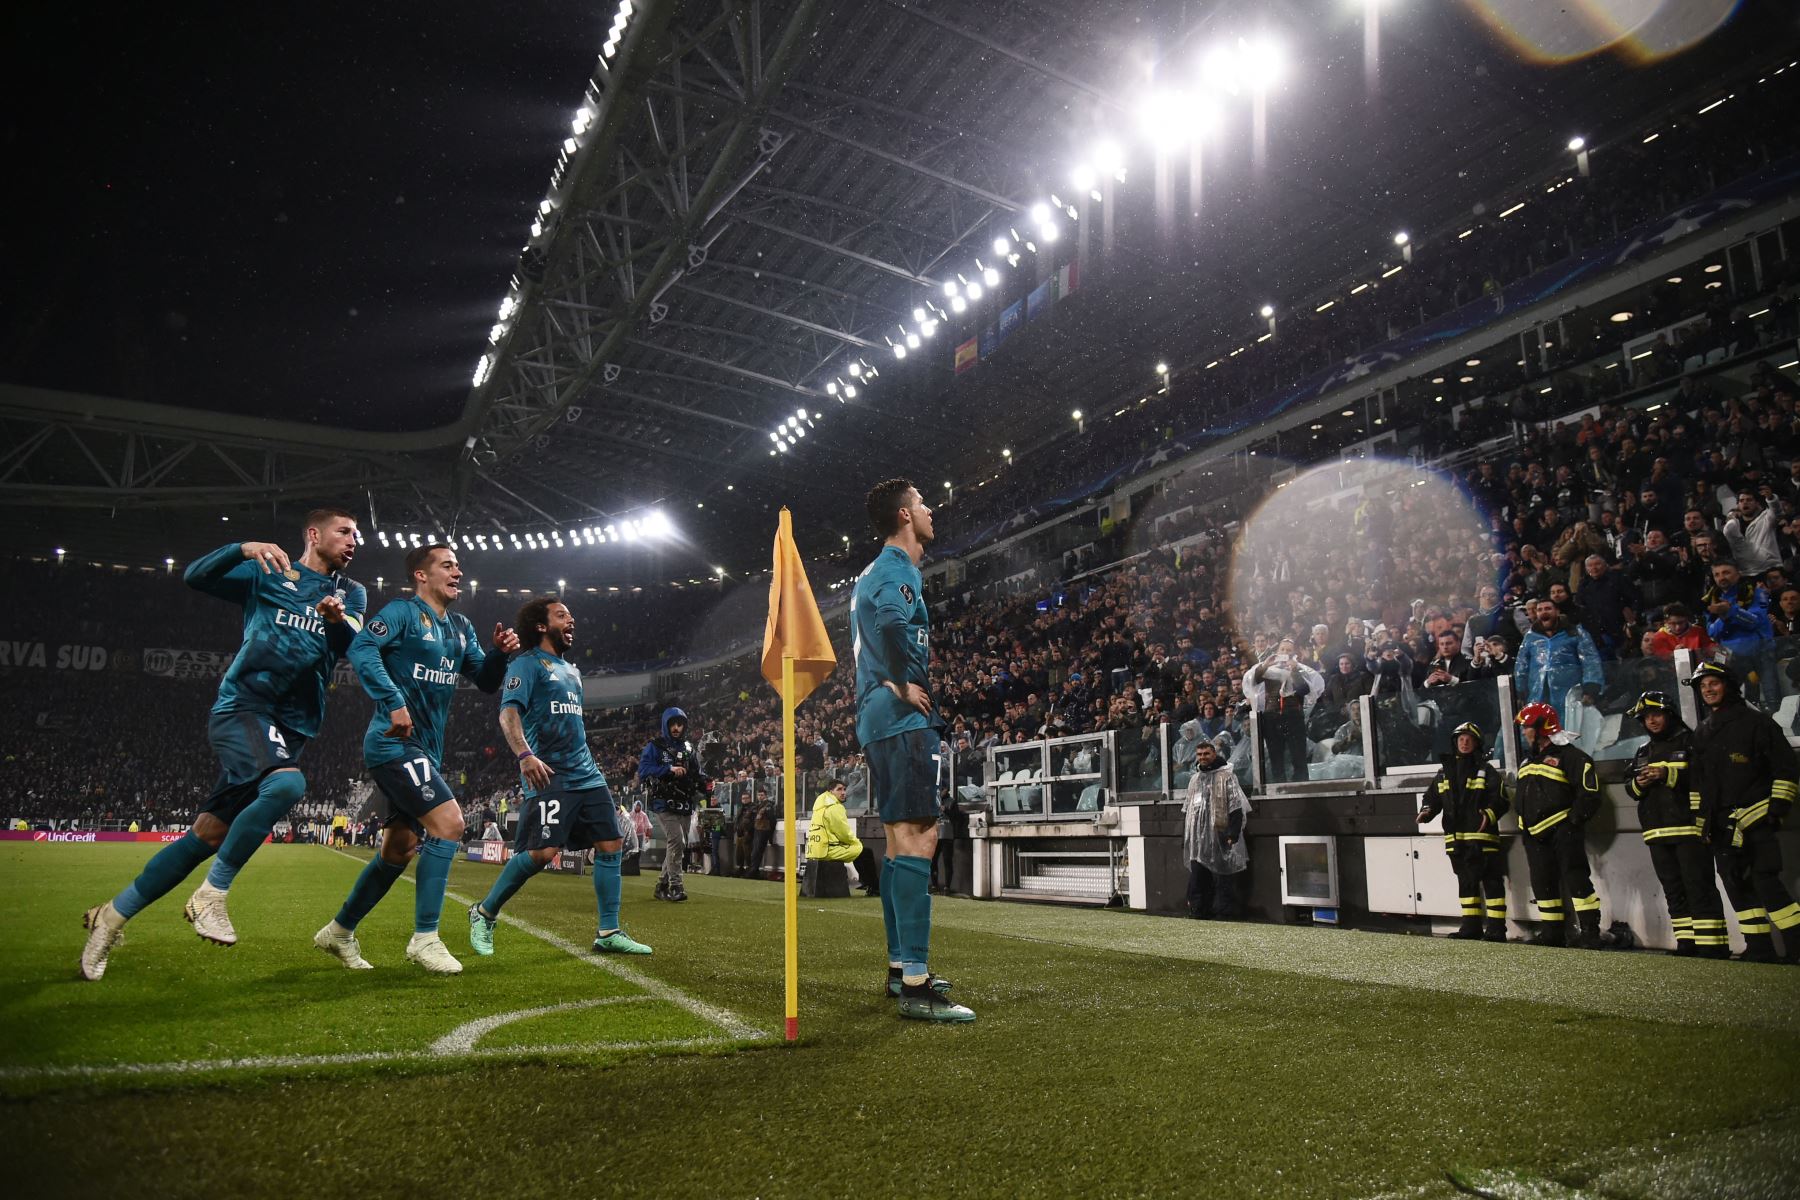 El delantero portugués del Real Madrid Cristiano Ronaldo celebra con sus compañeros de equipo tras marcar su segundo gol durante el partido de ida de cuartos de final de la UEFA Champions League entre la Juventus y el Real Madrid en el Allianz Stadium de Turín el 3 de abril de 2018.
Foto: AFP